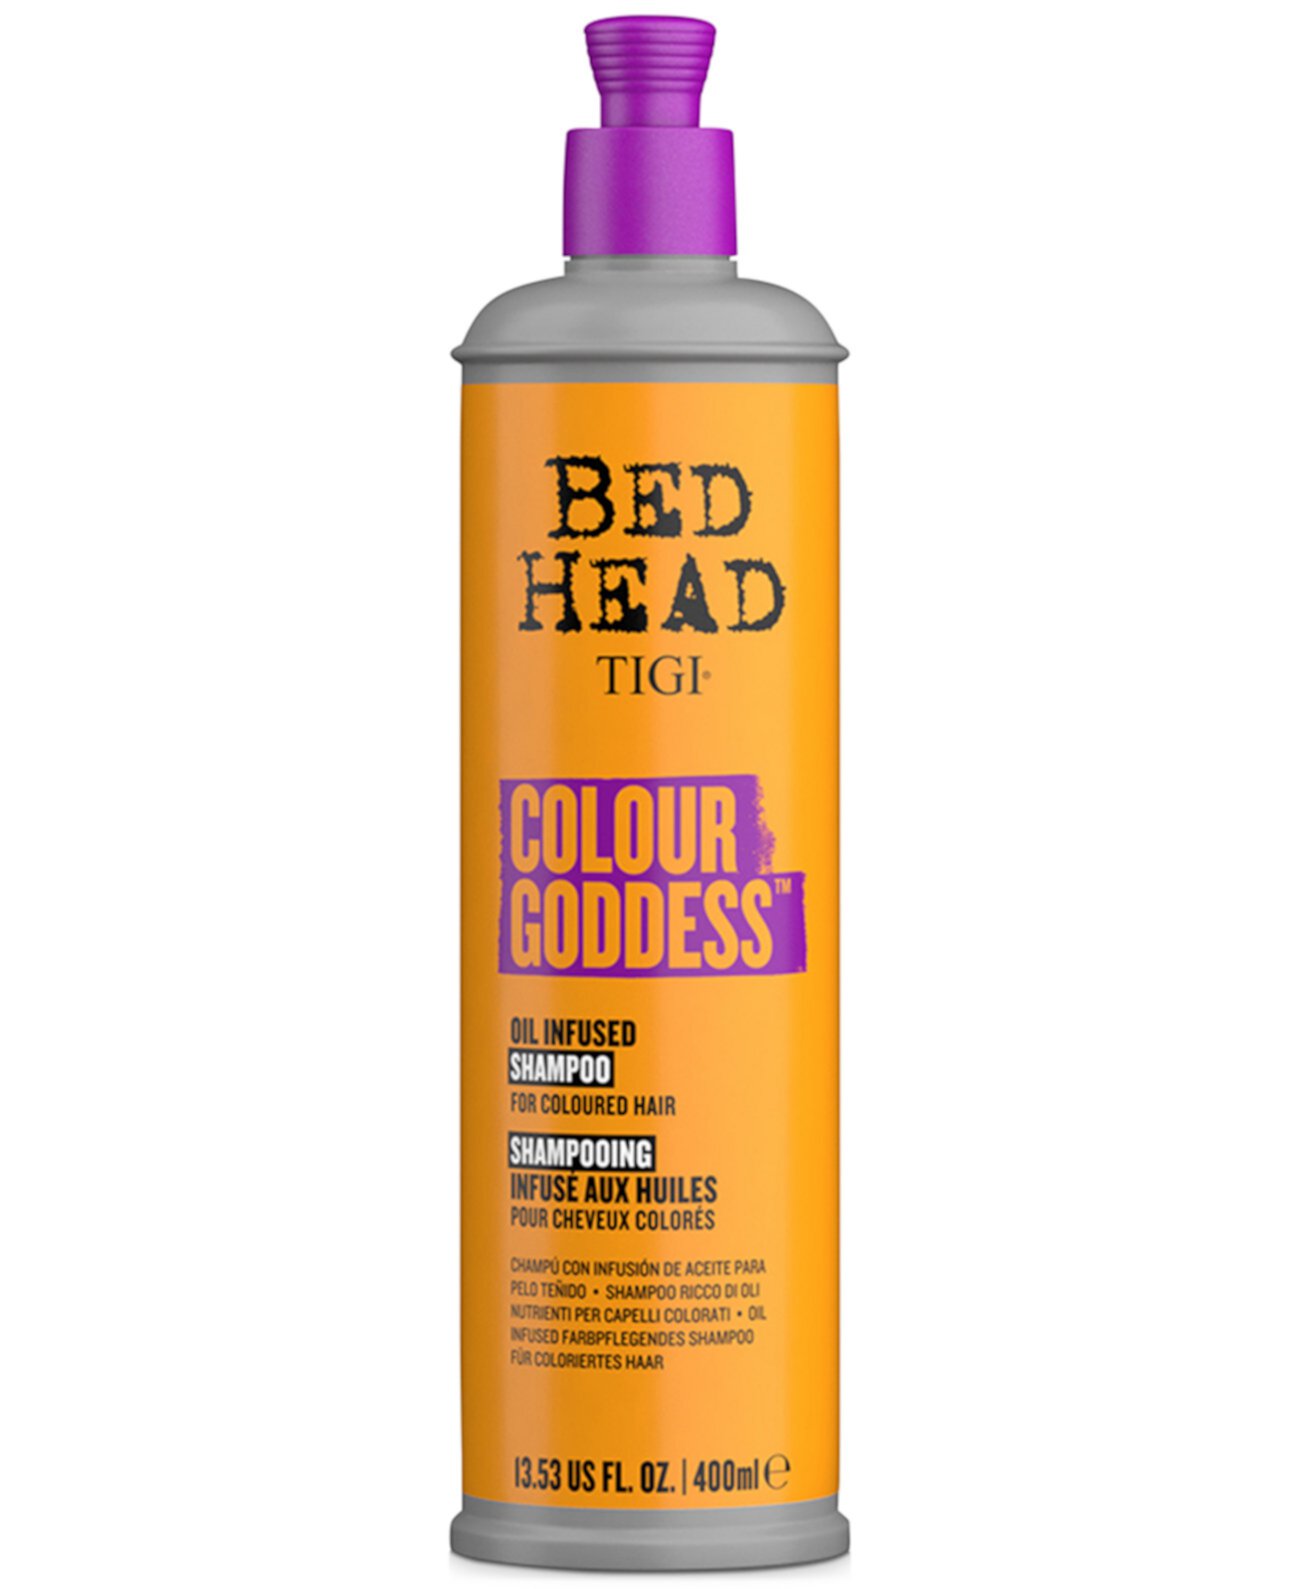 Шампунь Bed Head Color Goddess, 13,53 унции, от PUREBEAUTY Salon & Spa TIGI